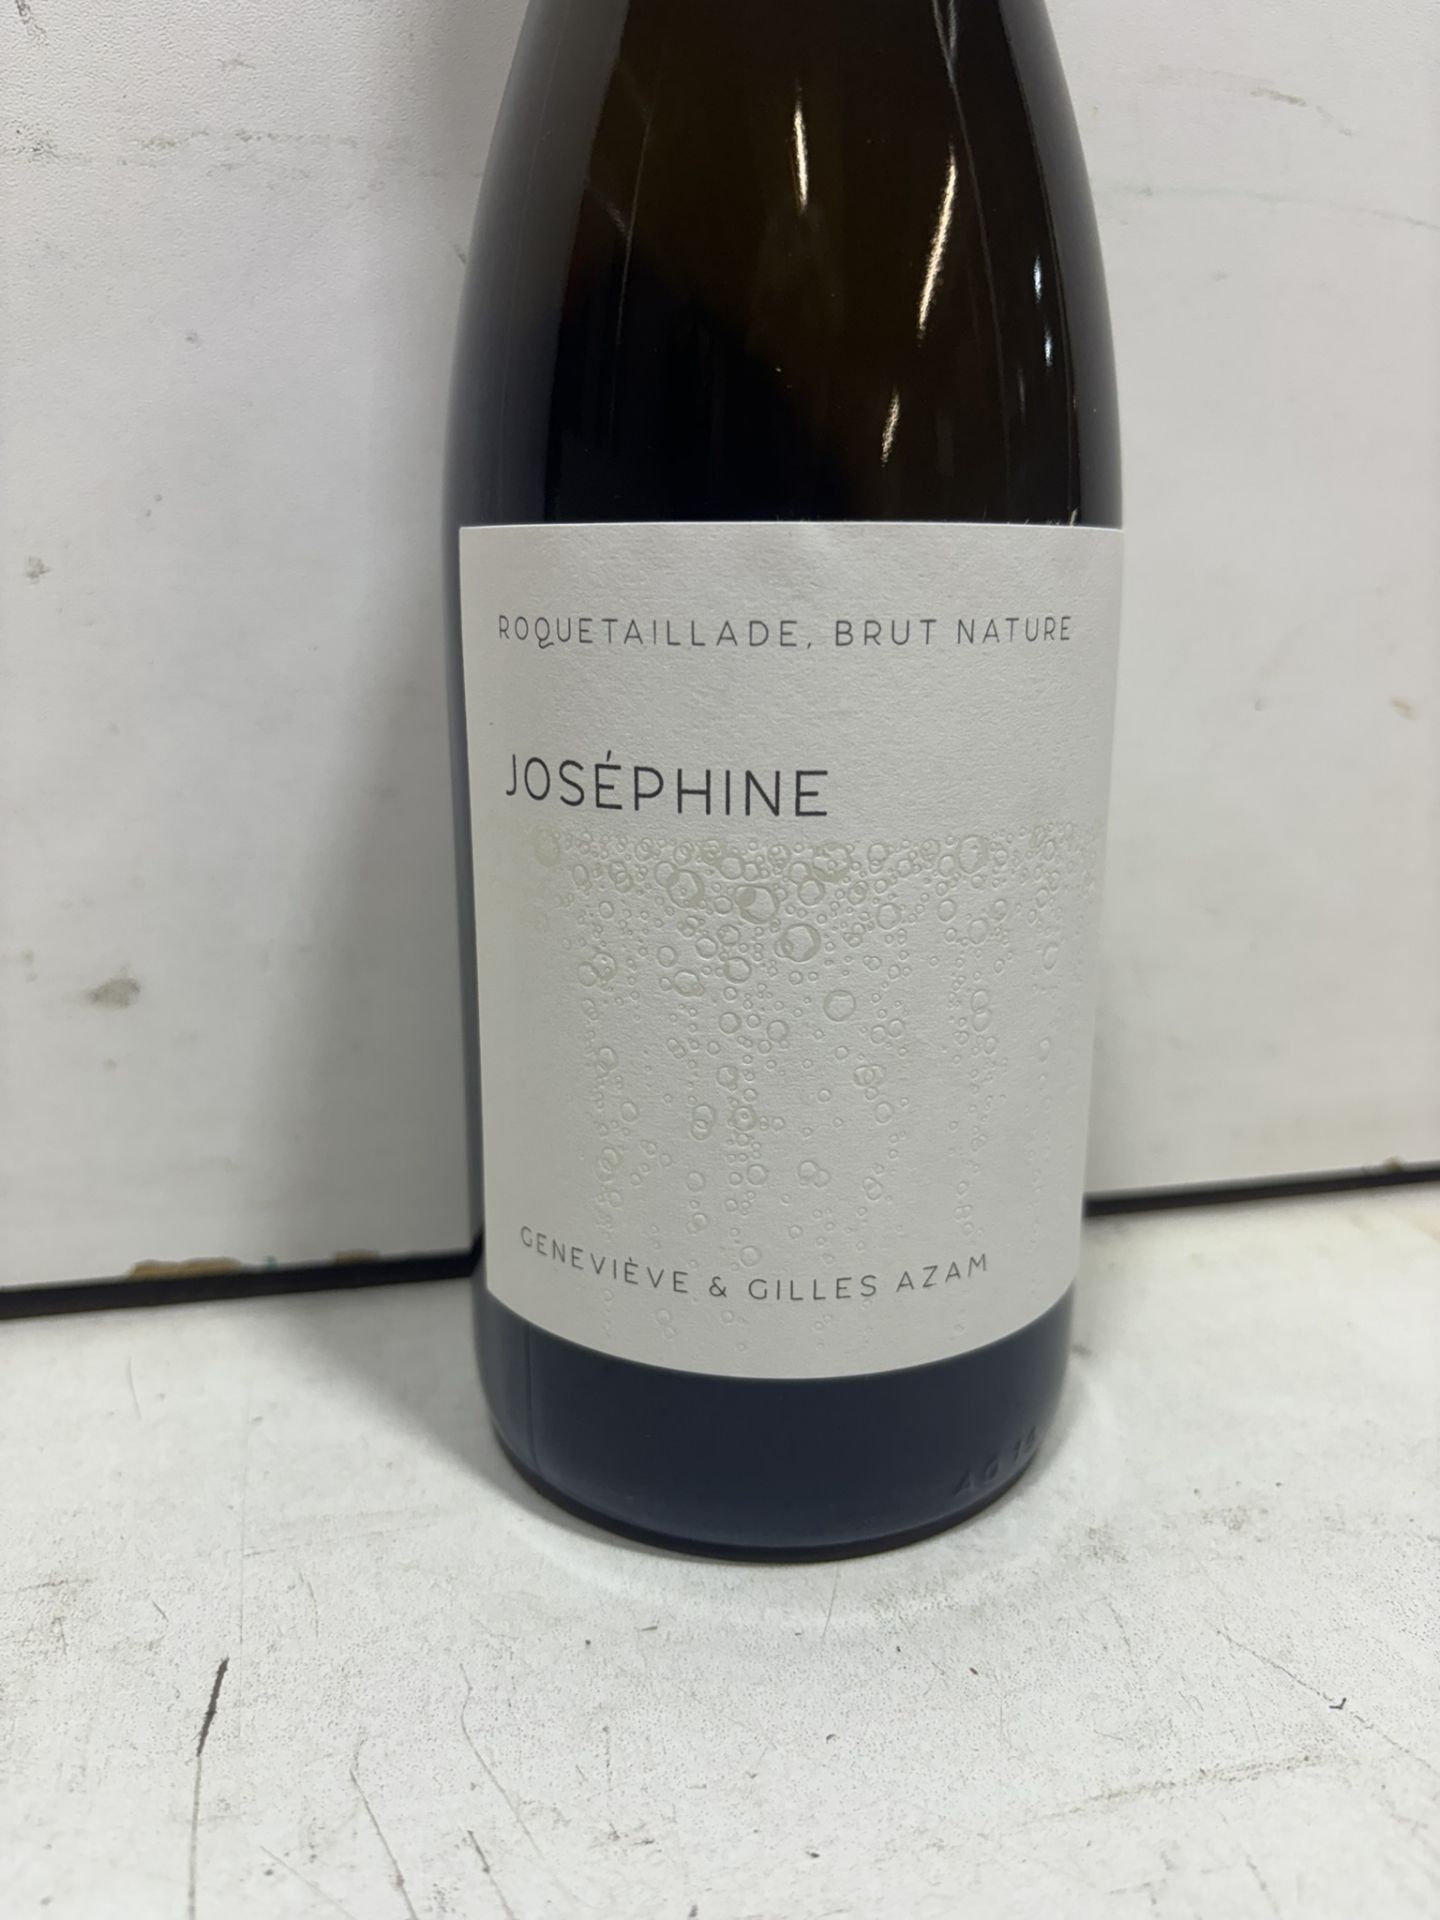 6 X Bottles Of Les Hautes Terres 'Joséphine' Crémant De Limoux Nv - Image 2 of 5